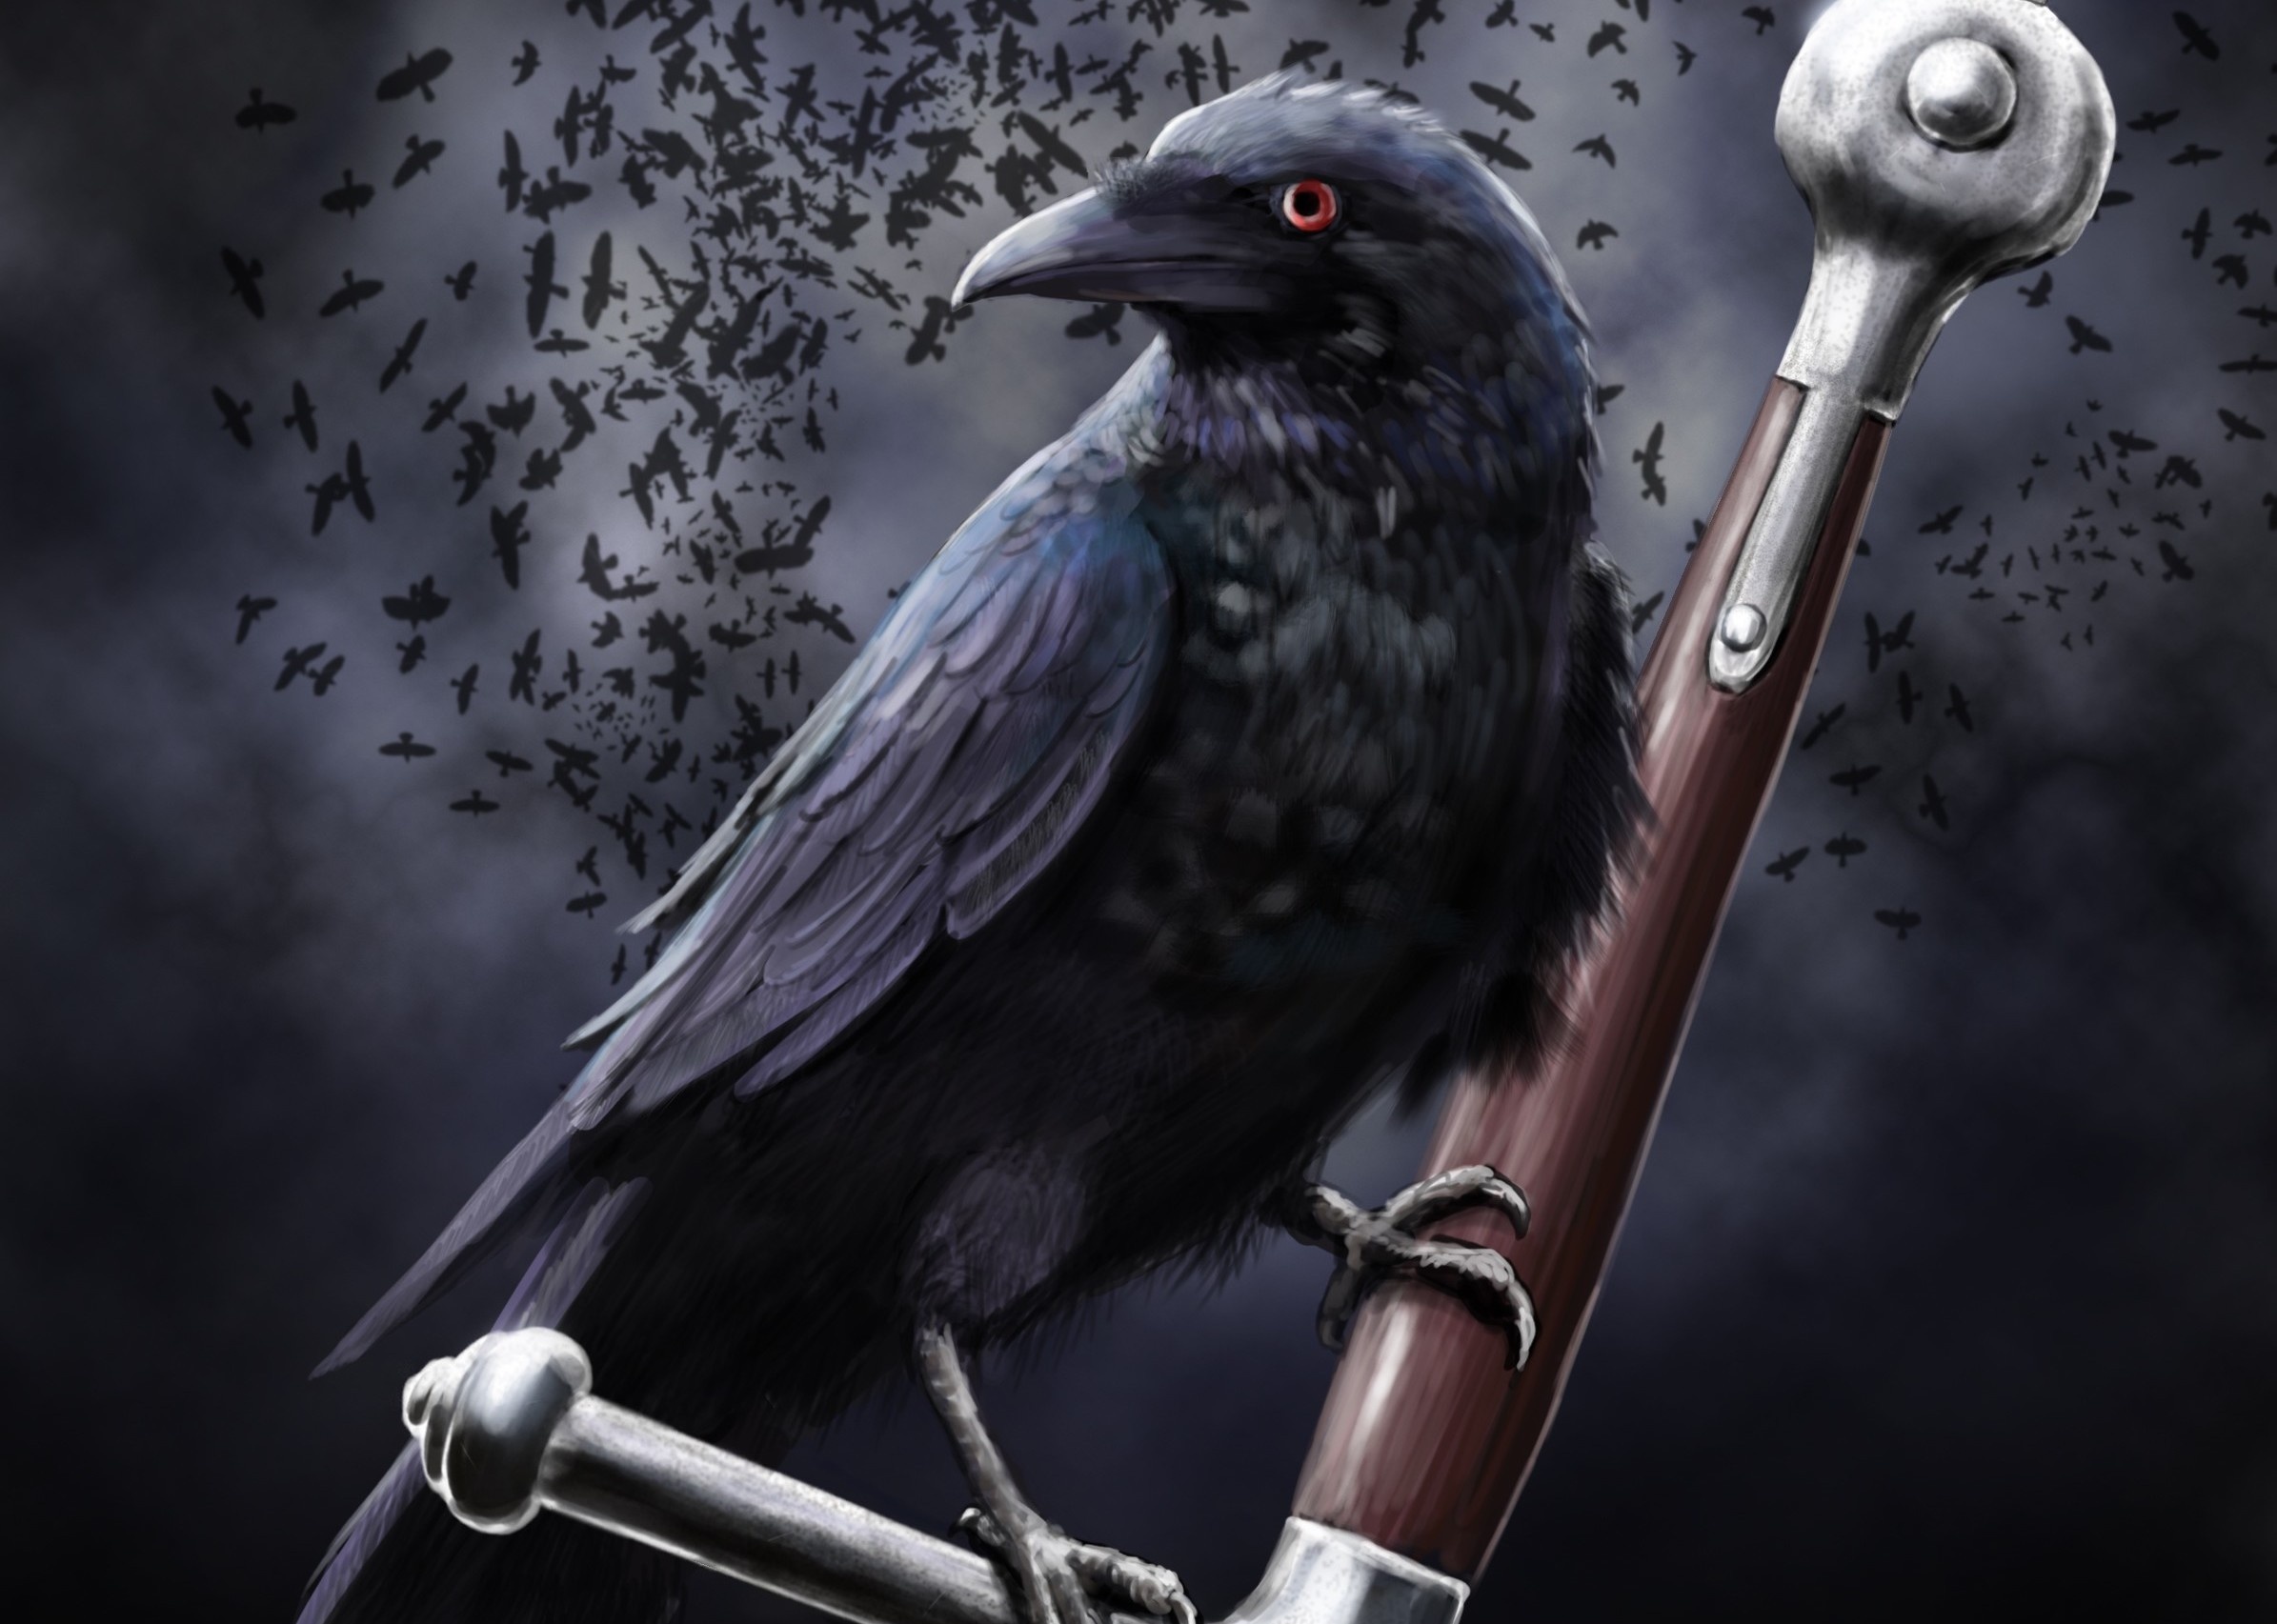 Ravens Crows, Dark, Black Birds, Desktop Wallpapers : Wallpapers13.com